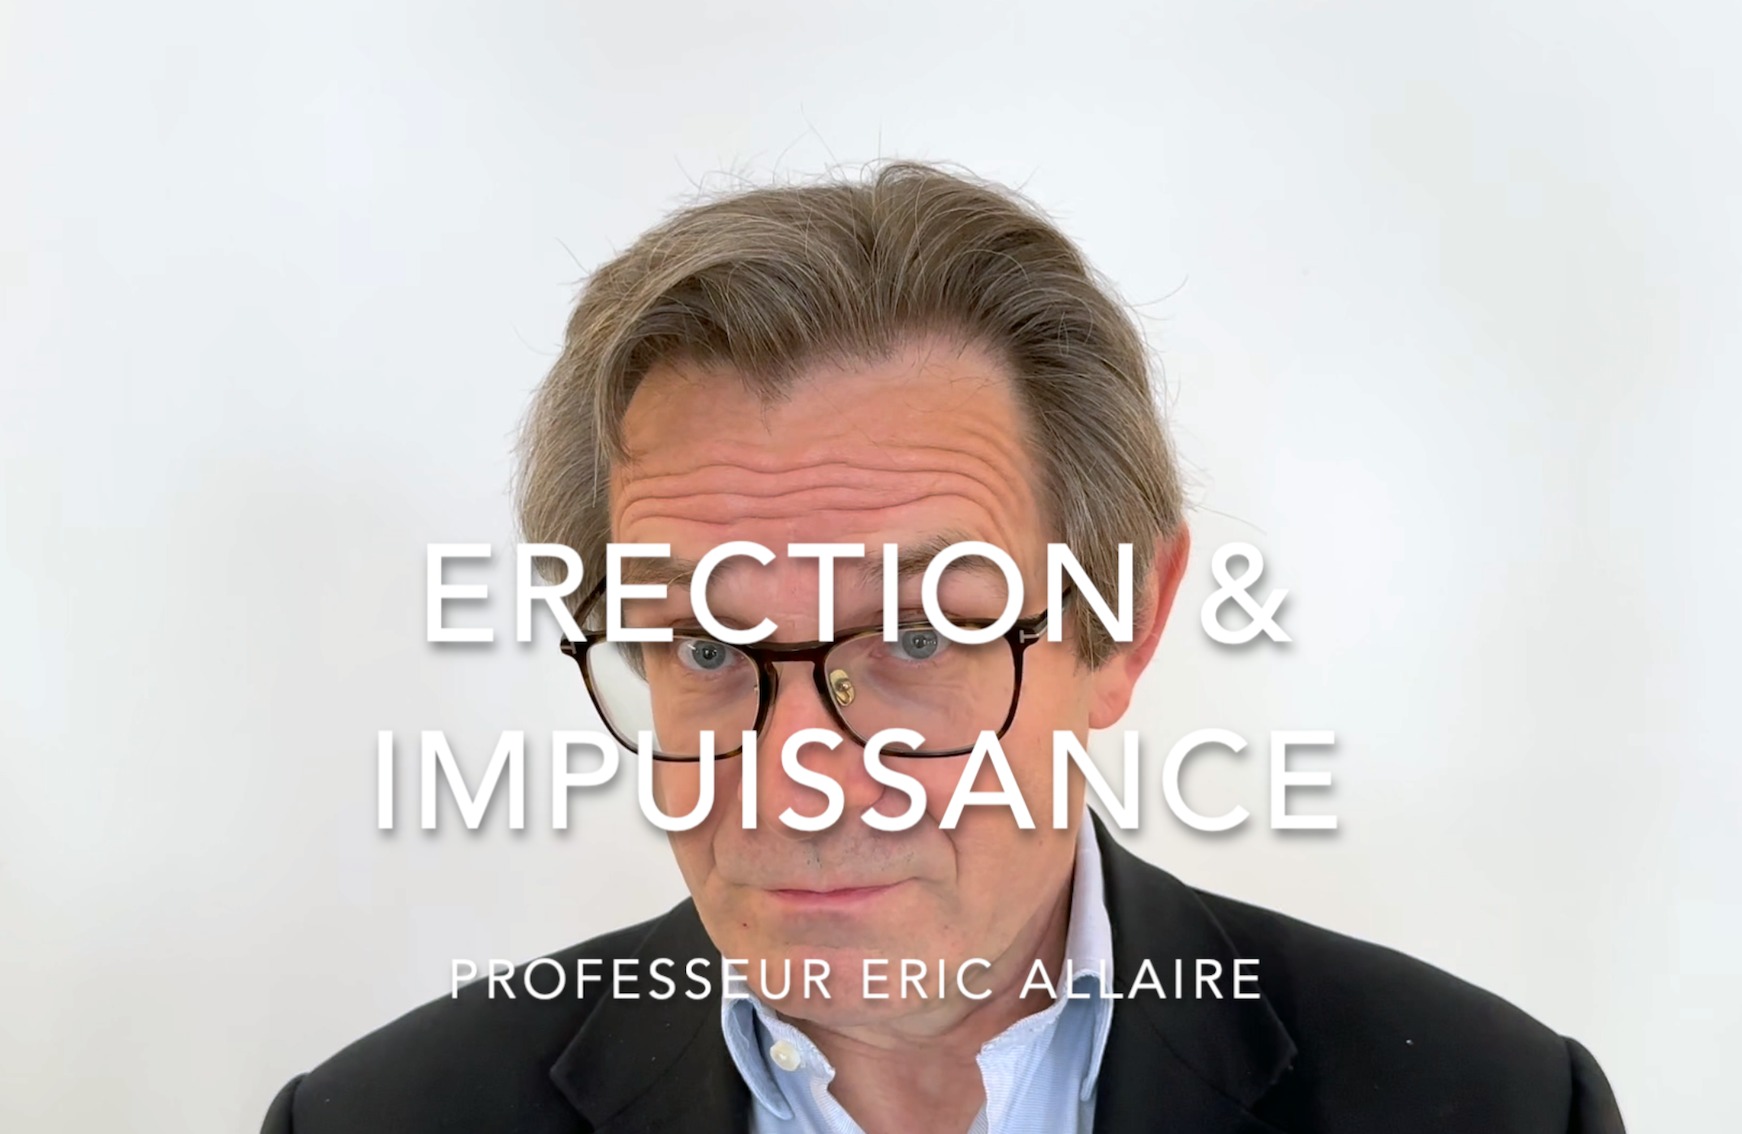 Le Professeur Eric Allaire vous parle de l'impuissance et de l'erection.